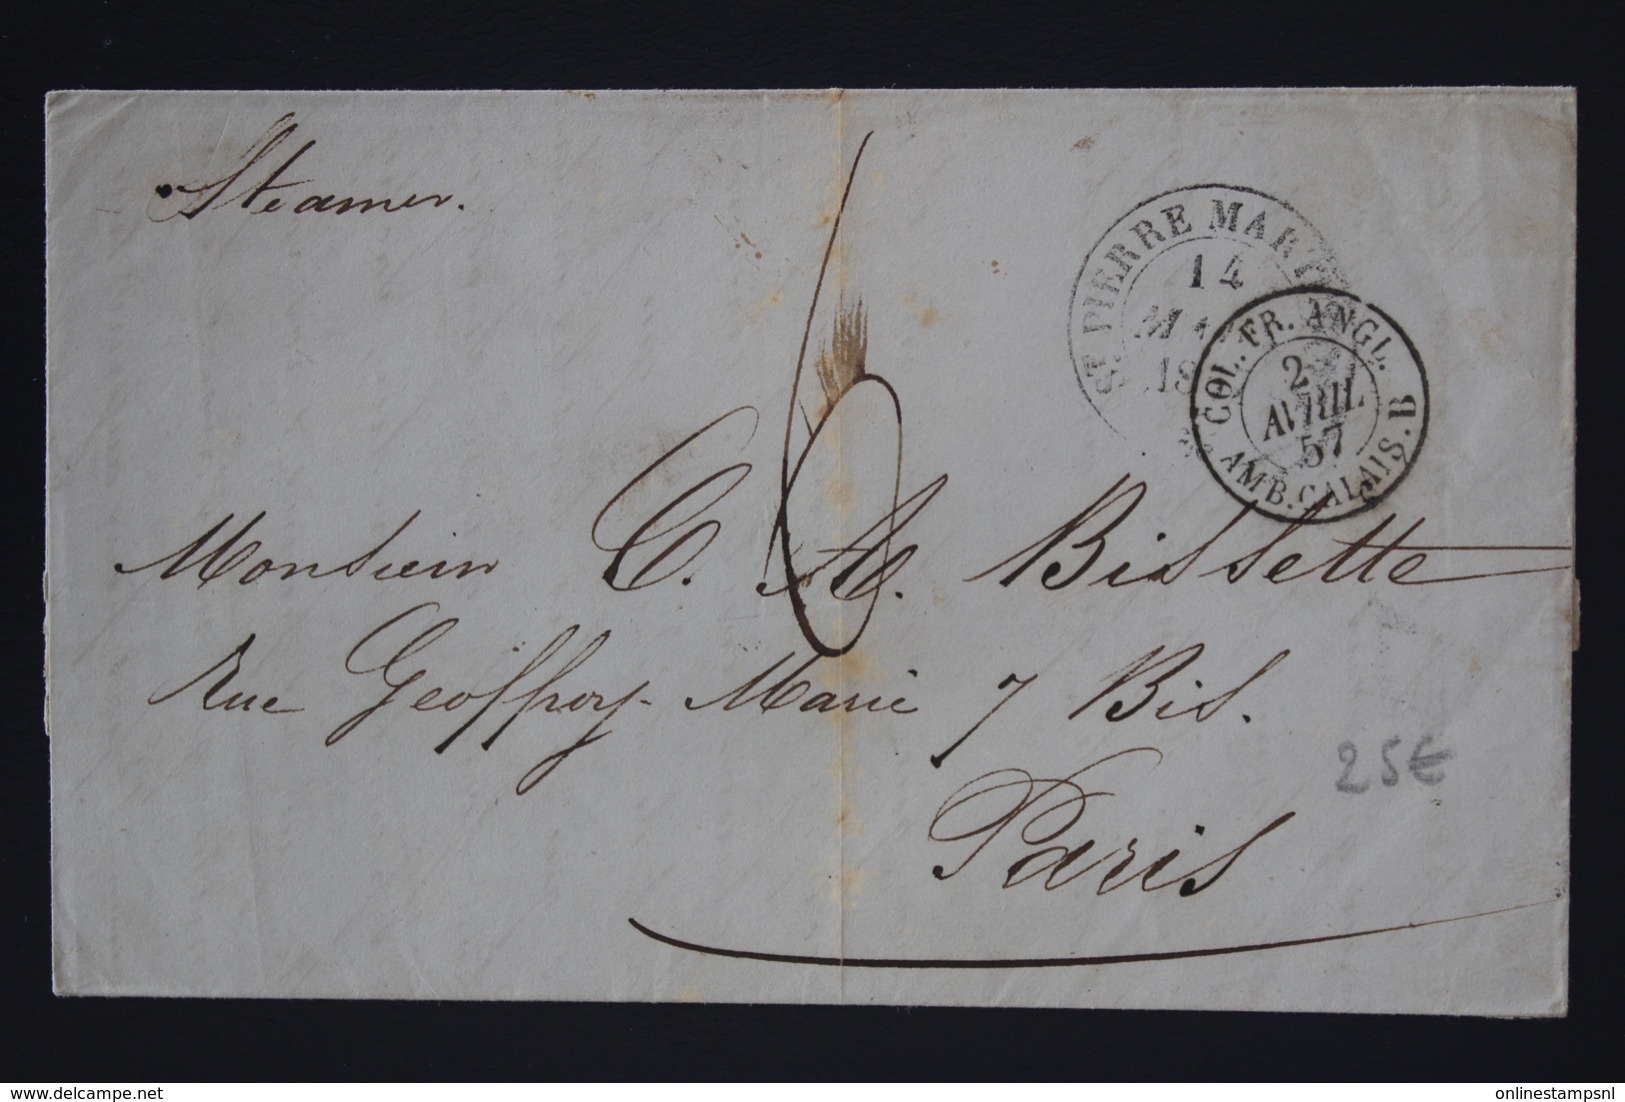 Martinique Letter St Pierre -> Paris 1857 COL. FR. ANGL. AMB CALAIS - Covers & Documents